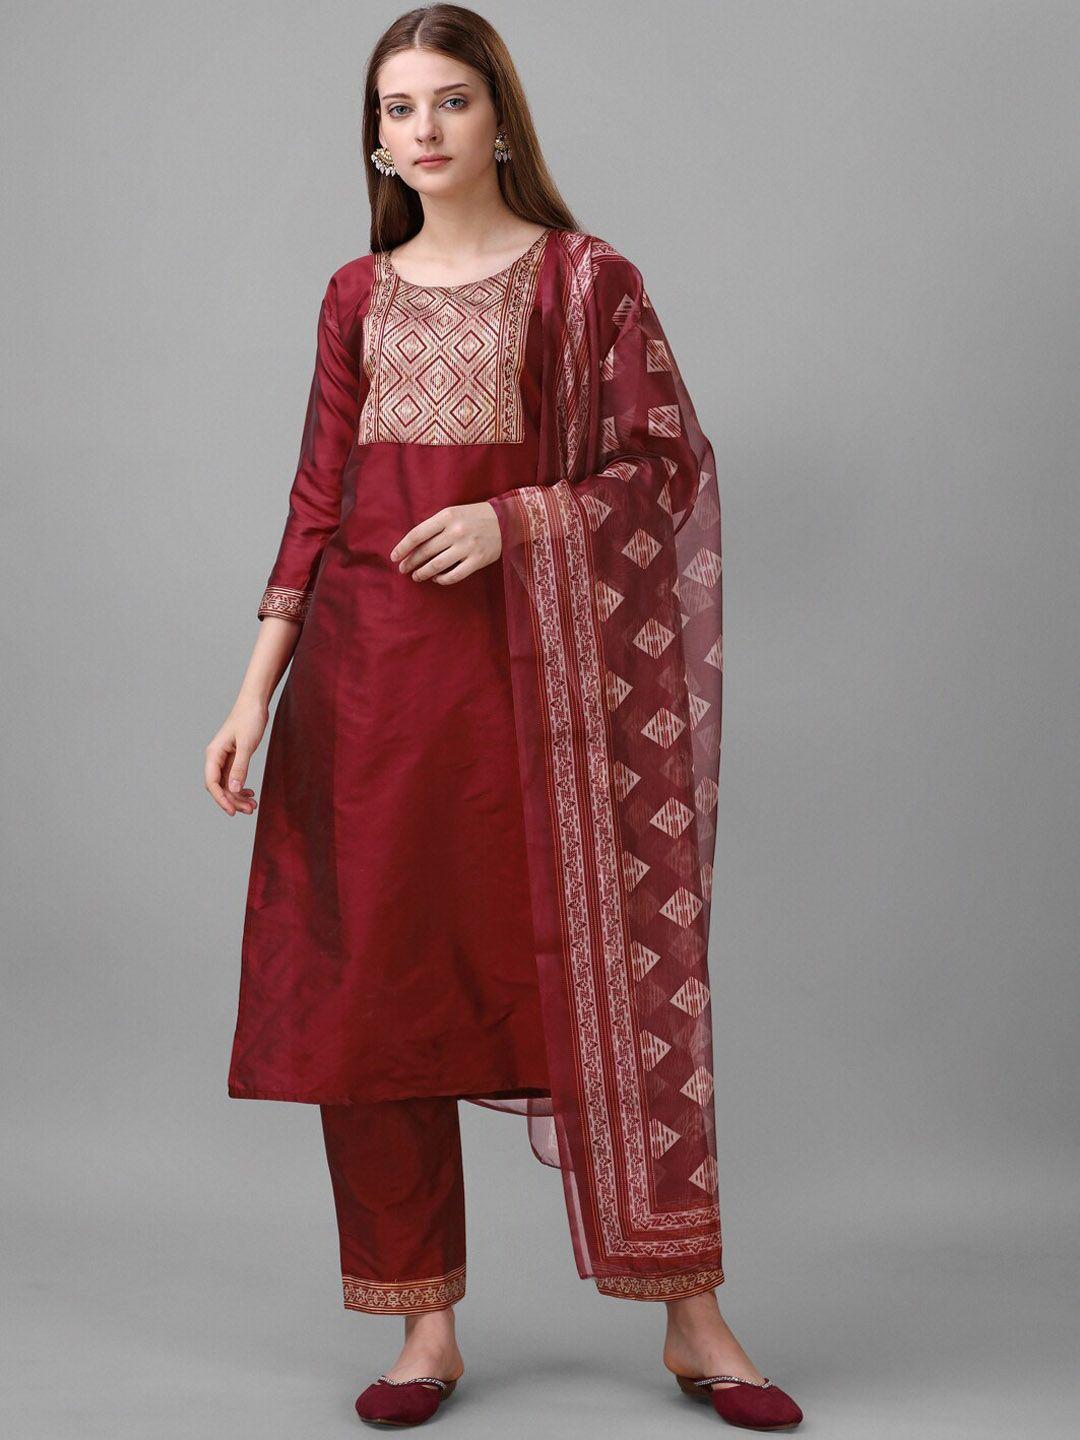 sun fashion and lifestyle yoke design ethnic motifs straight kurta & trousers with dupatta